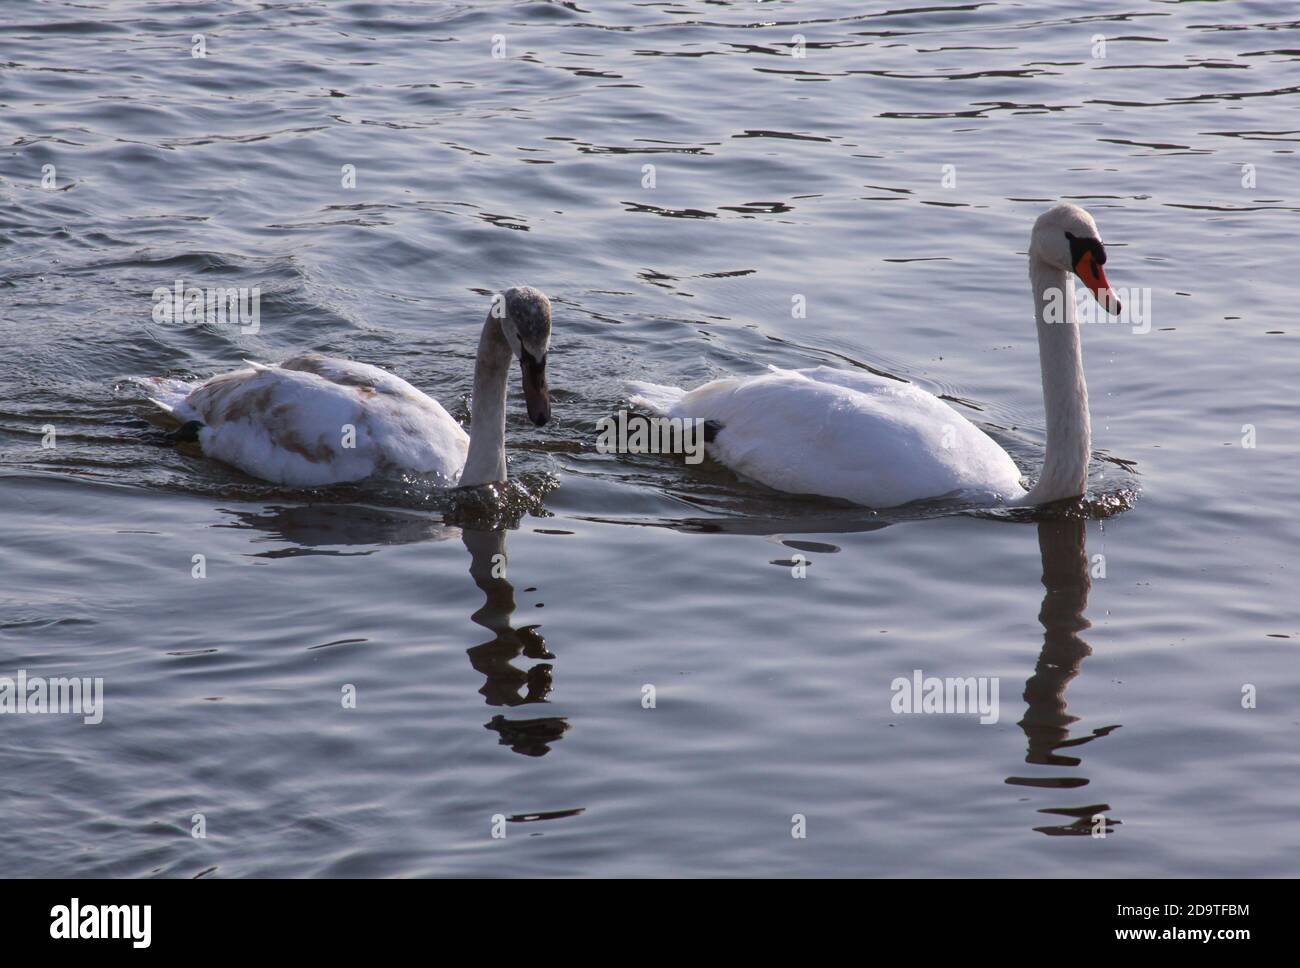 Zwei weiße Schwäne an der Flussoberfläche in der Stadt. Wilde Vögel im kalten Winter auf kalt eiskalten Wasseroberfläche. Stockfoto